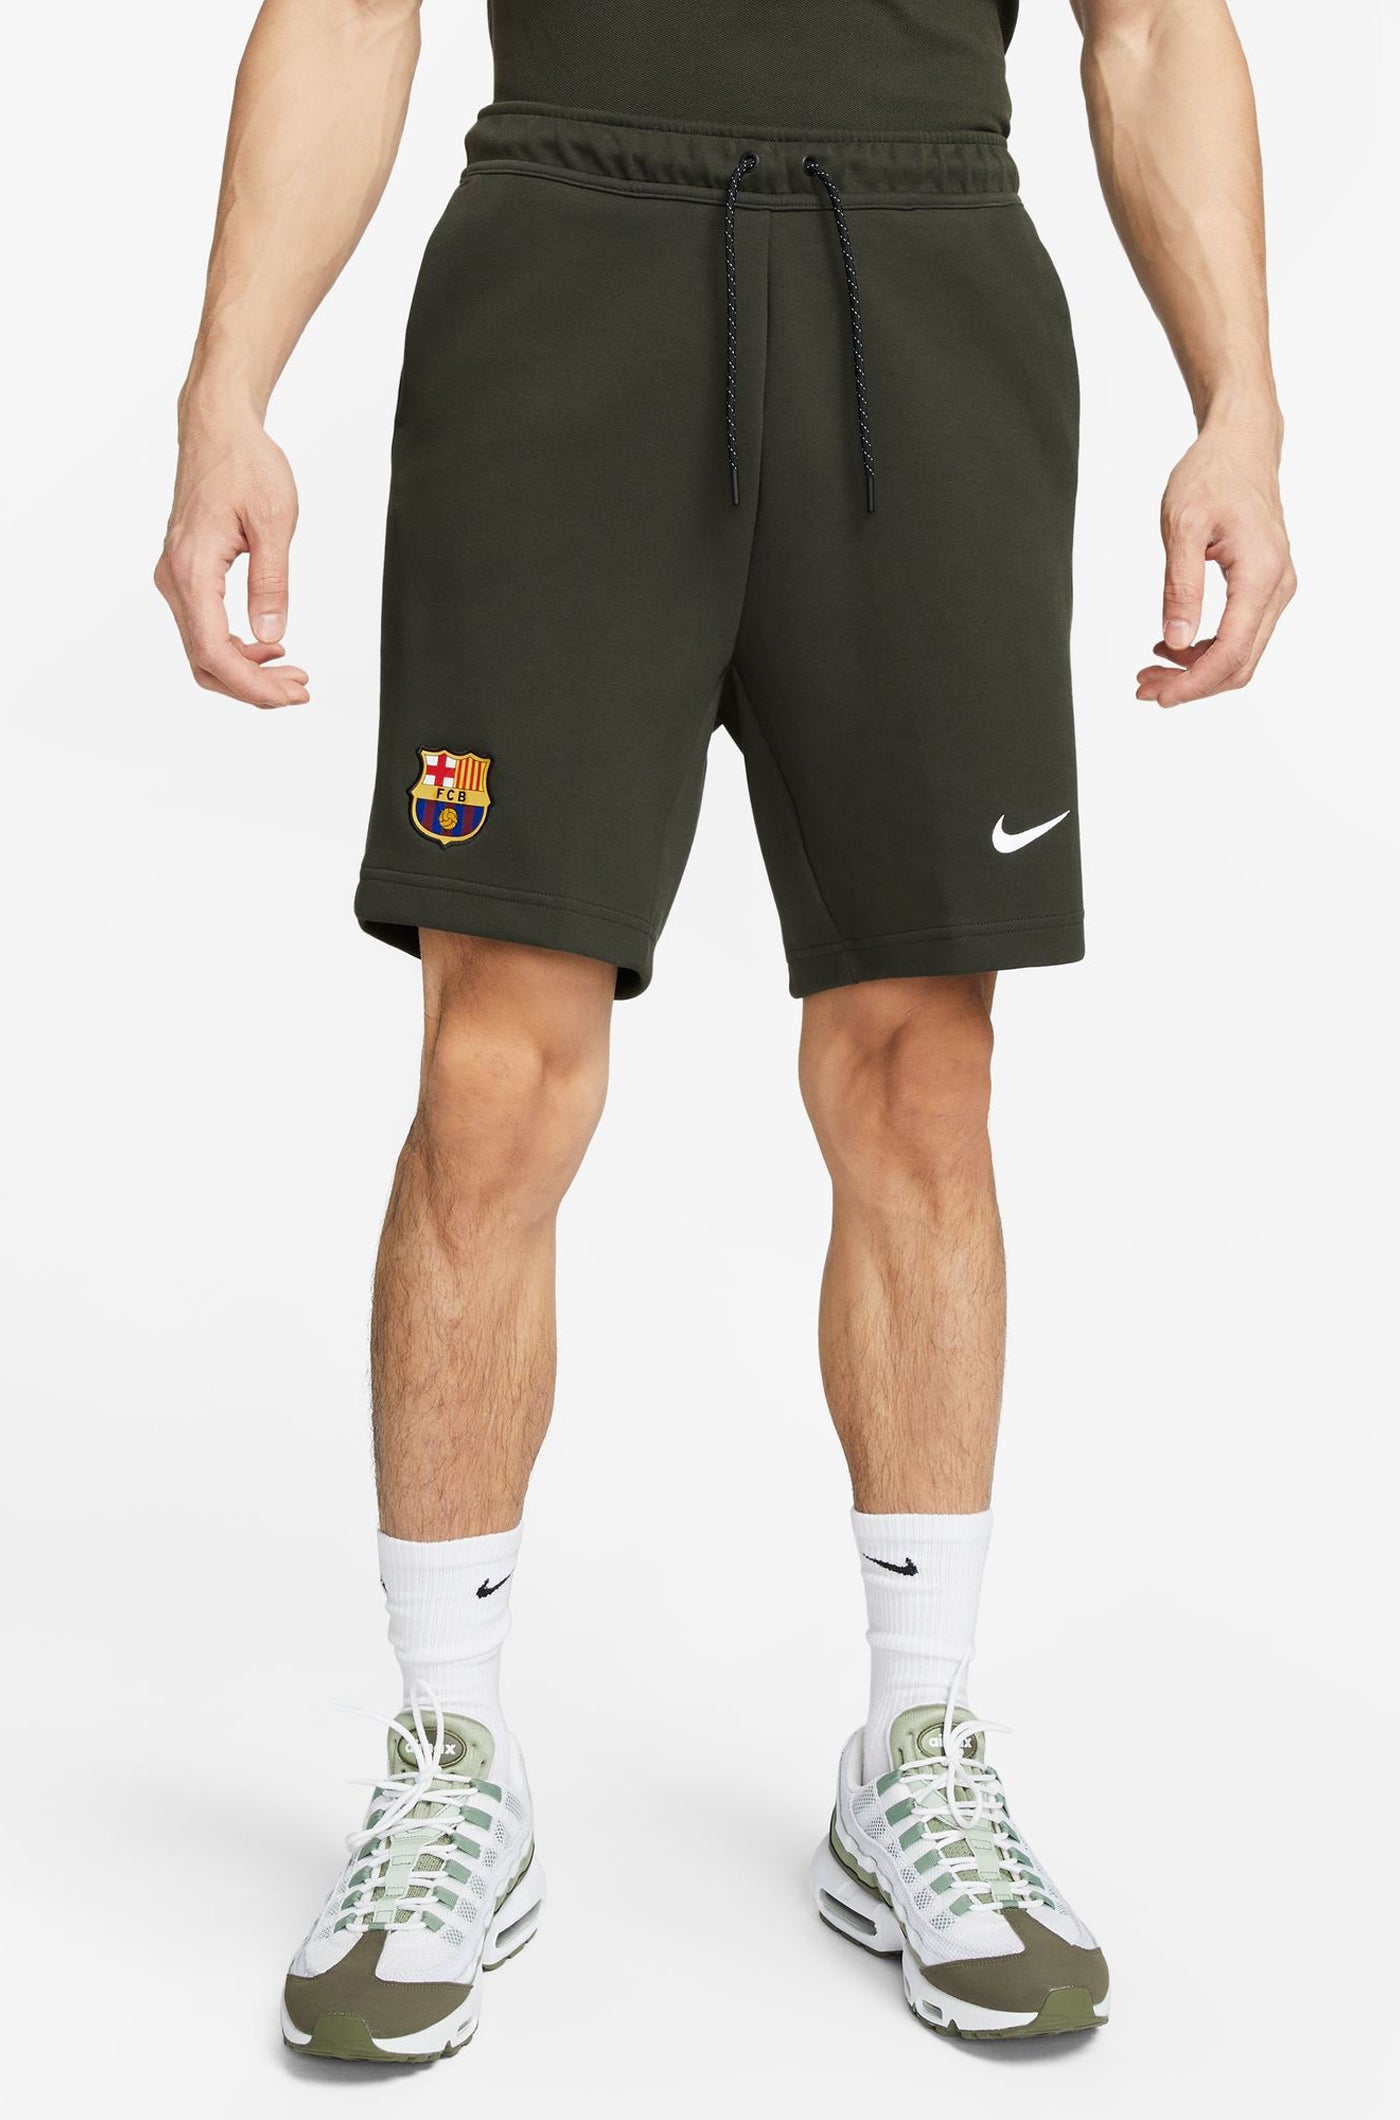 Grün Shorts Barça Nike